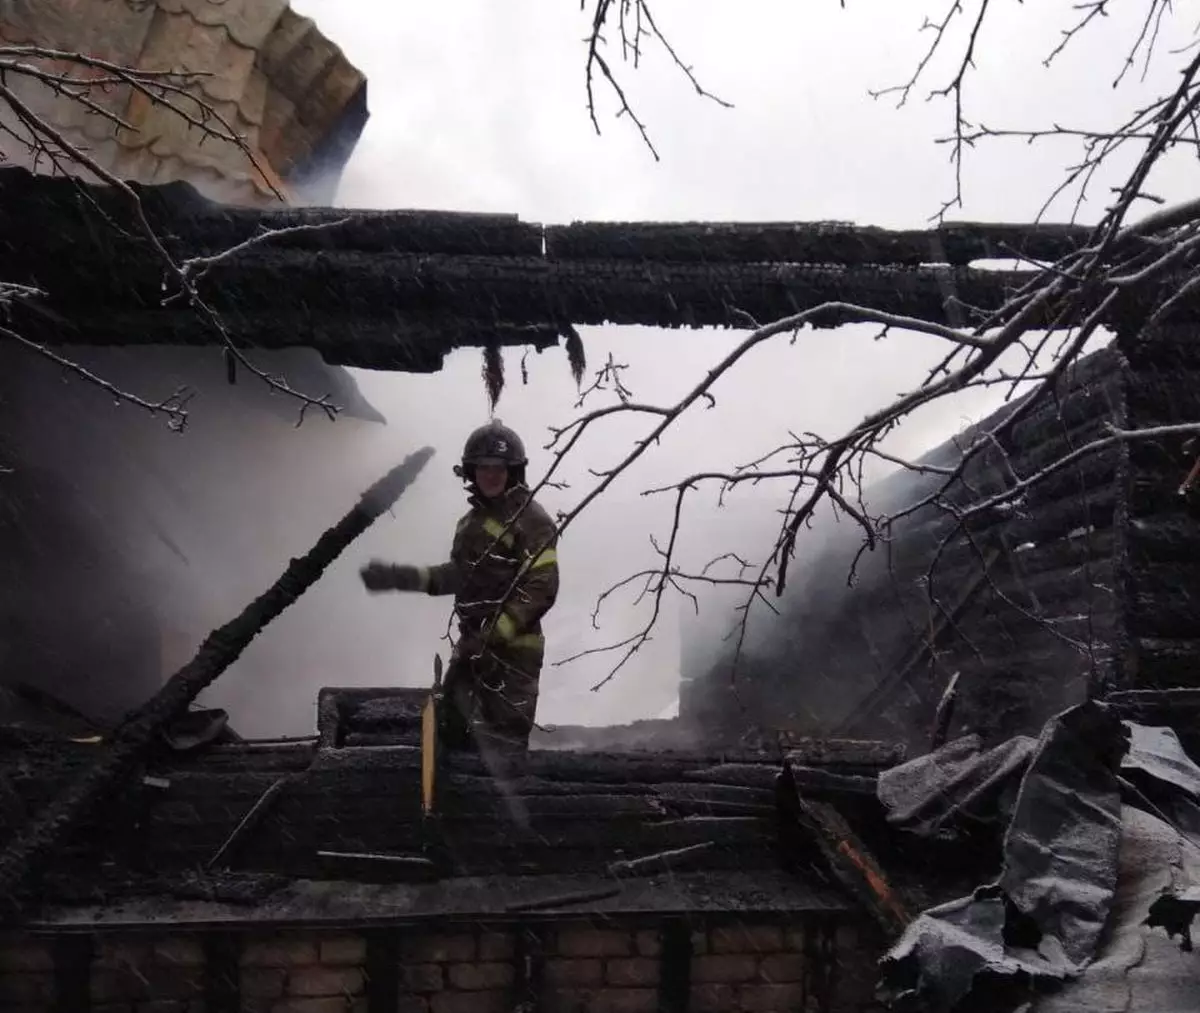 Пожар уничтожил жилой дом и хозяйственную постройку.